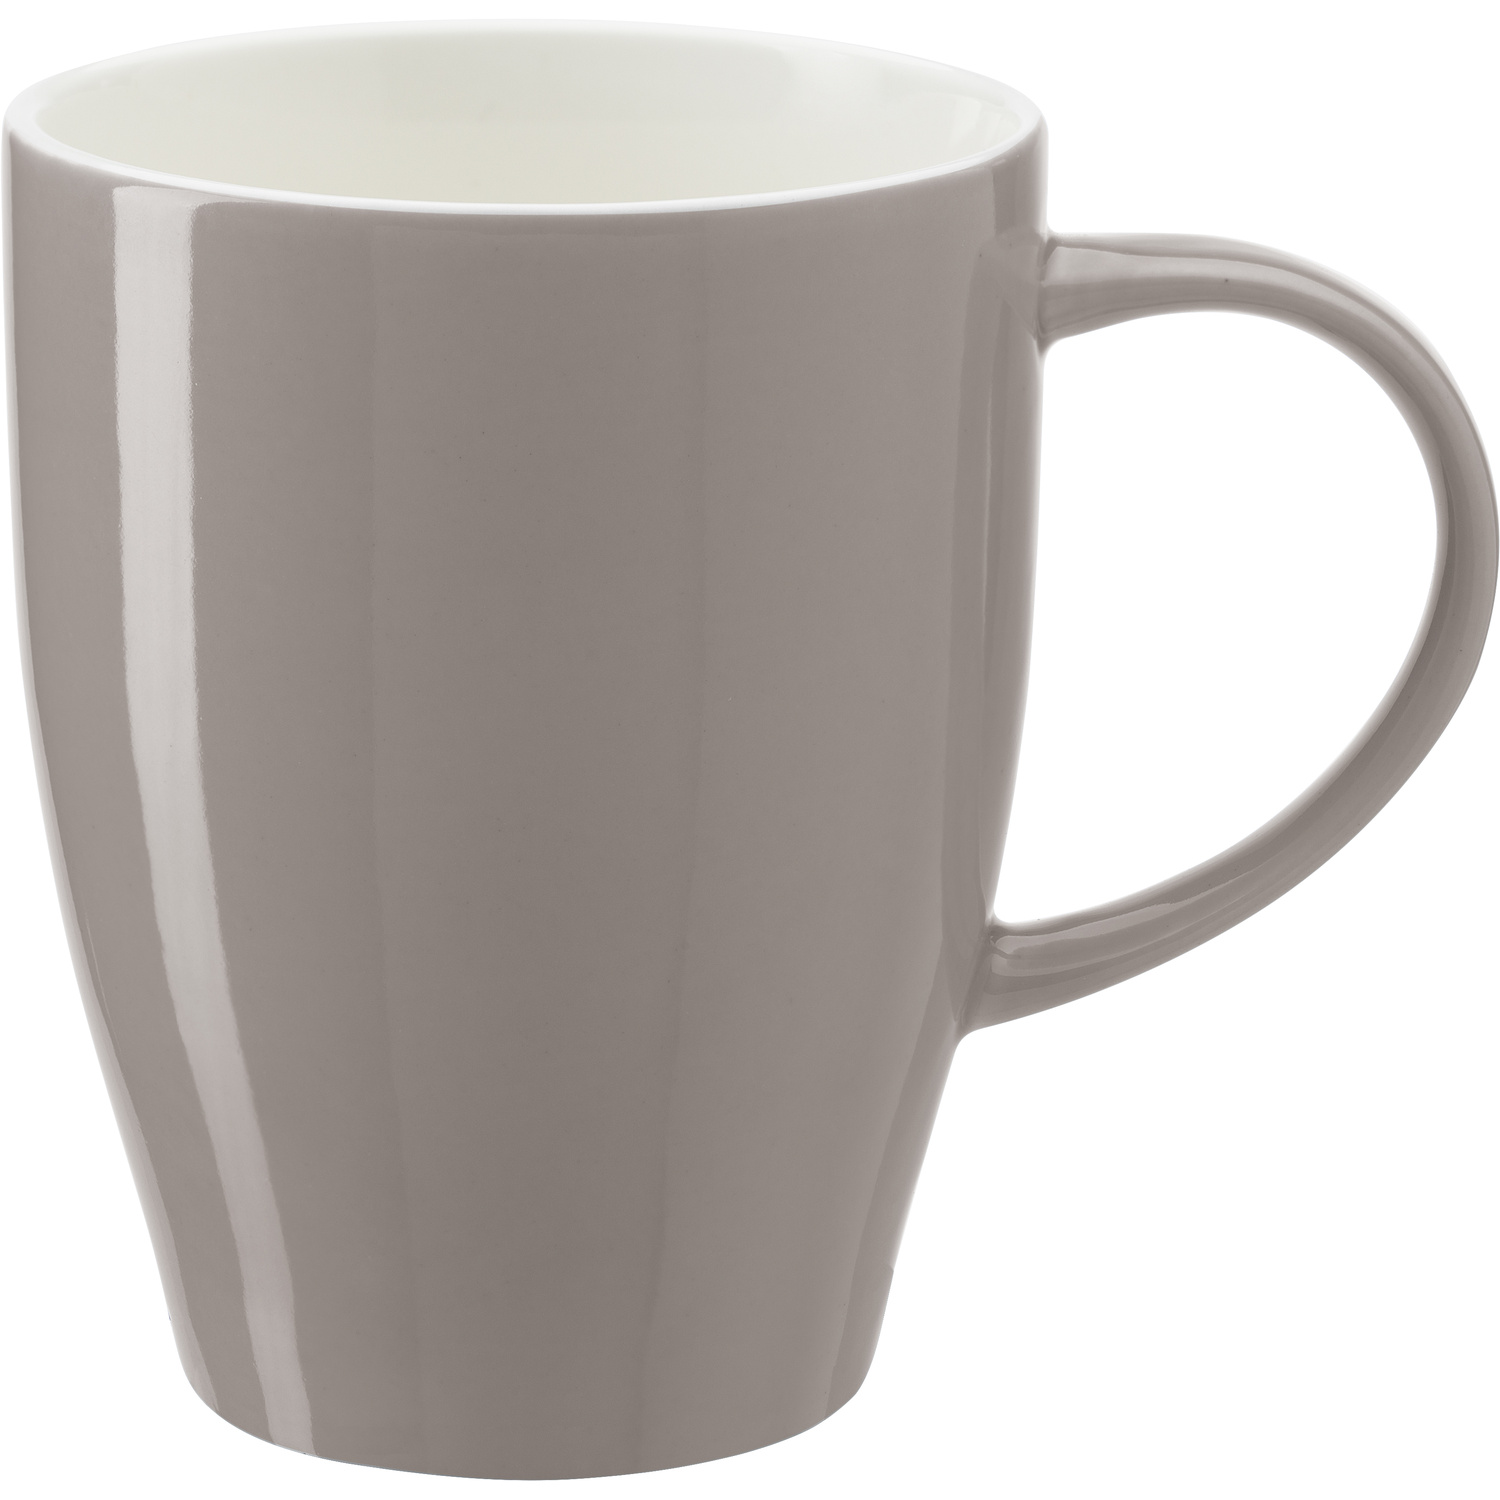 001124 003999999 3d090 frt pro01 fal - China mug (350ml)